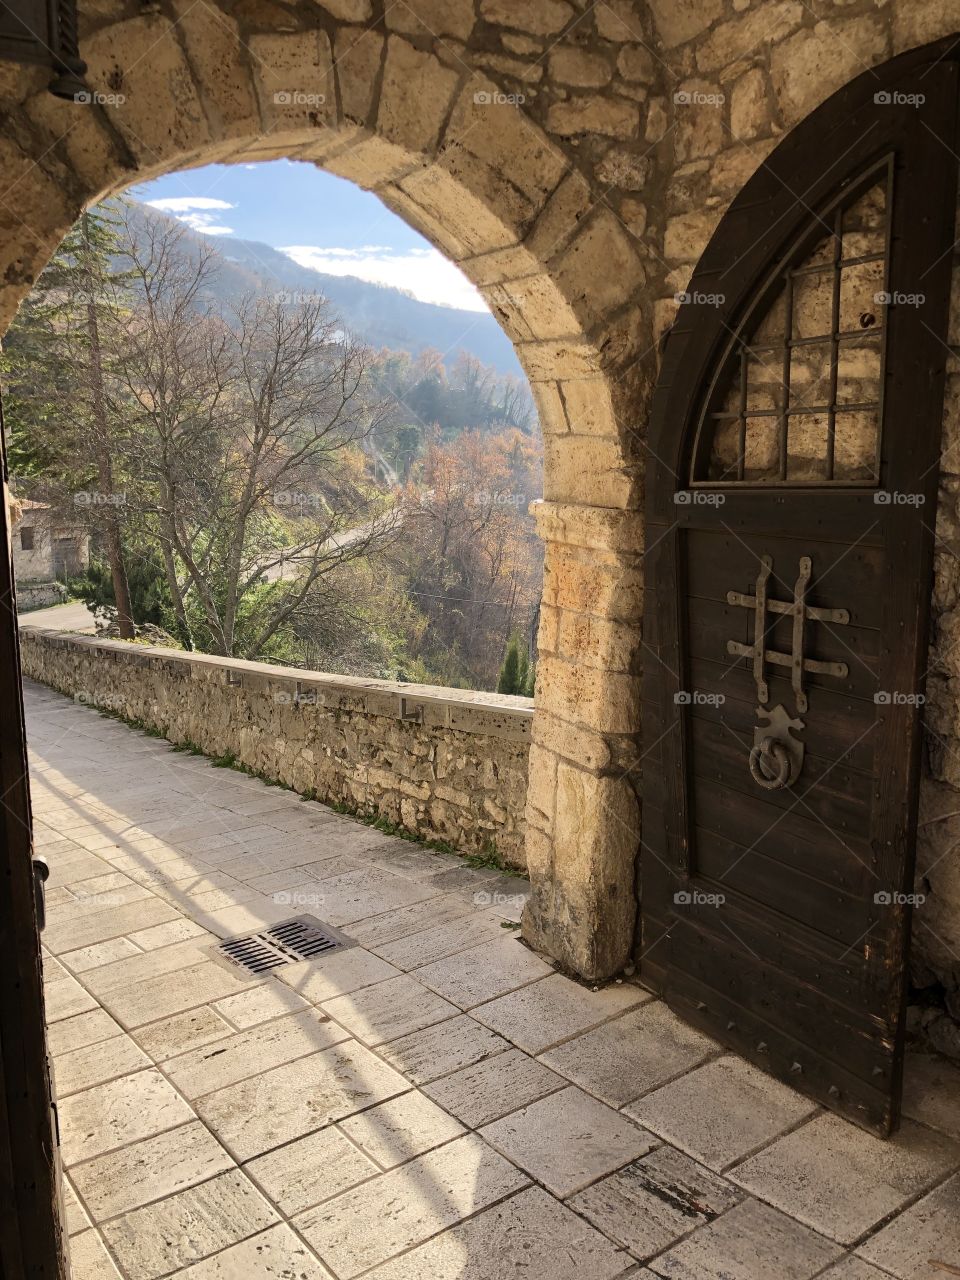 Main gate of the medieval village of Castel Trosino, Ascoli Piceno county, Marche region, Italy